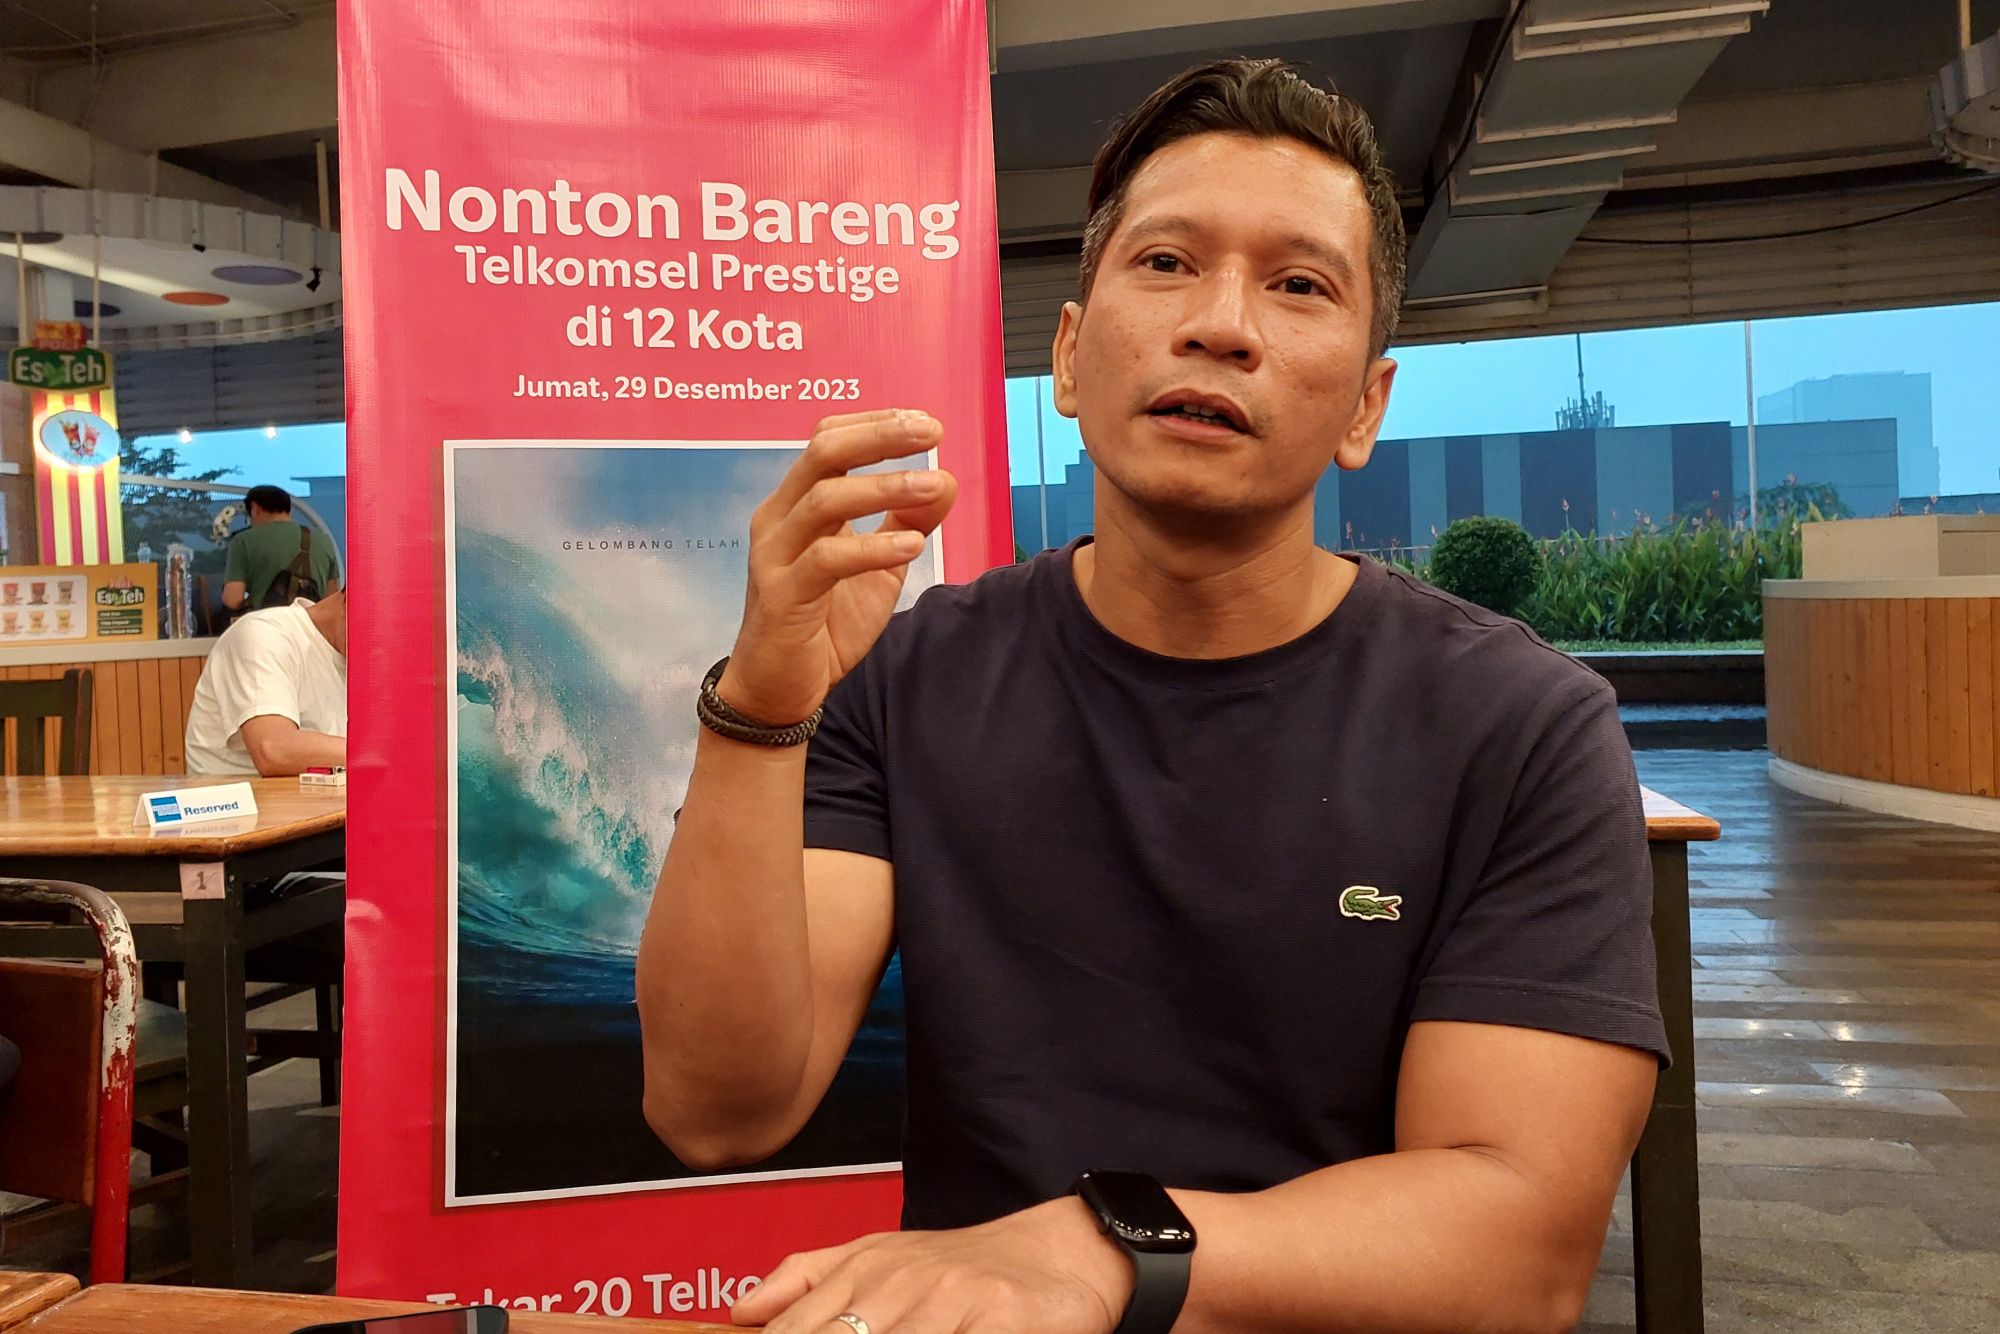 Manager Mobile Consumer Branch Bandung, Tedy Kristianto, saat menjawab pertanyaan wartawan dalam gelaran nonton bareng Aquaman serentak di 12 kota melalui program loyalitas Telkomsel Prestige.